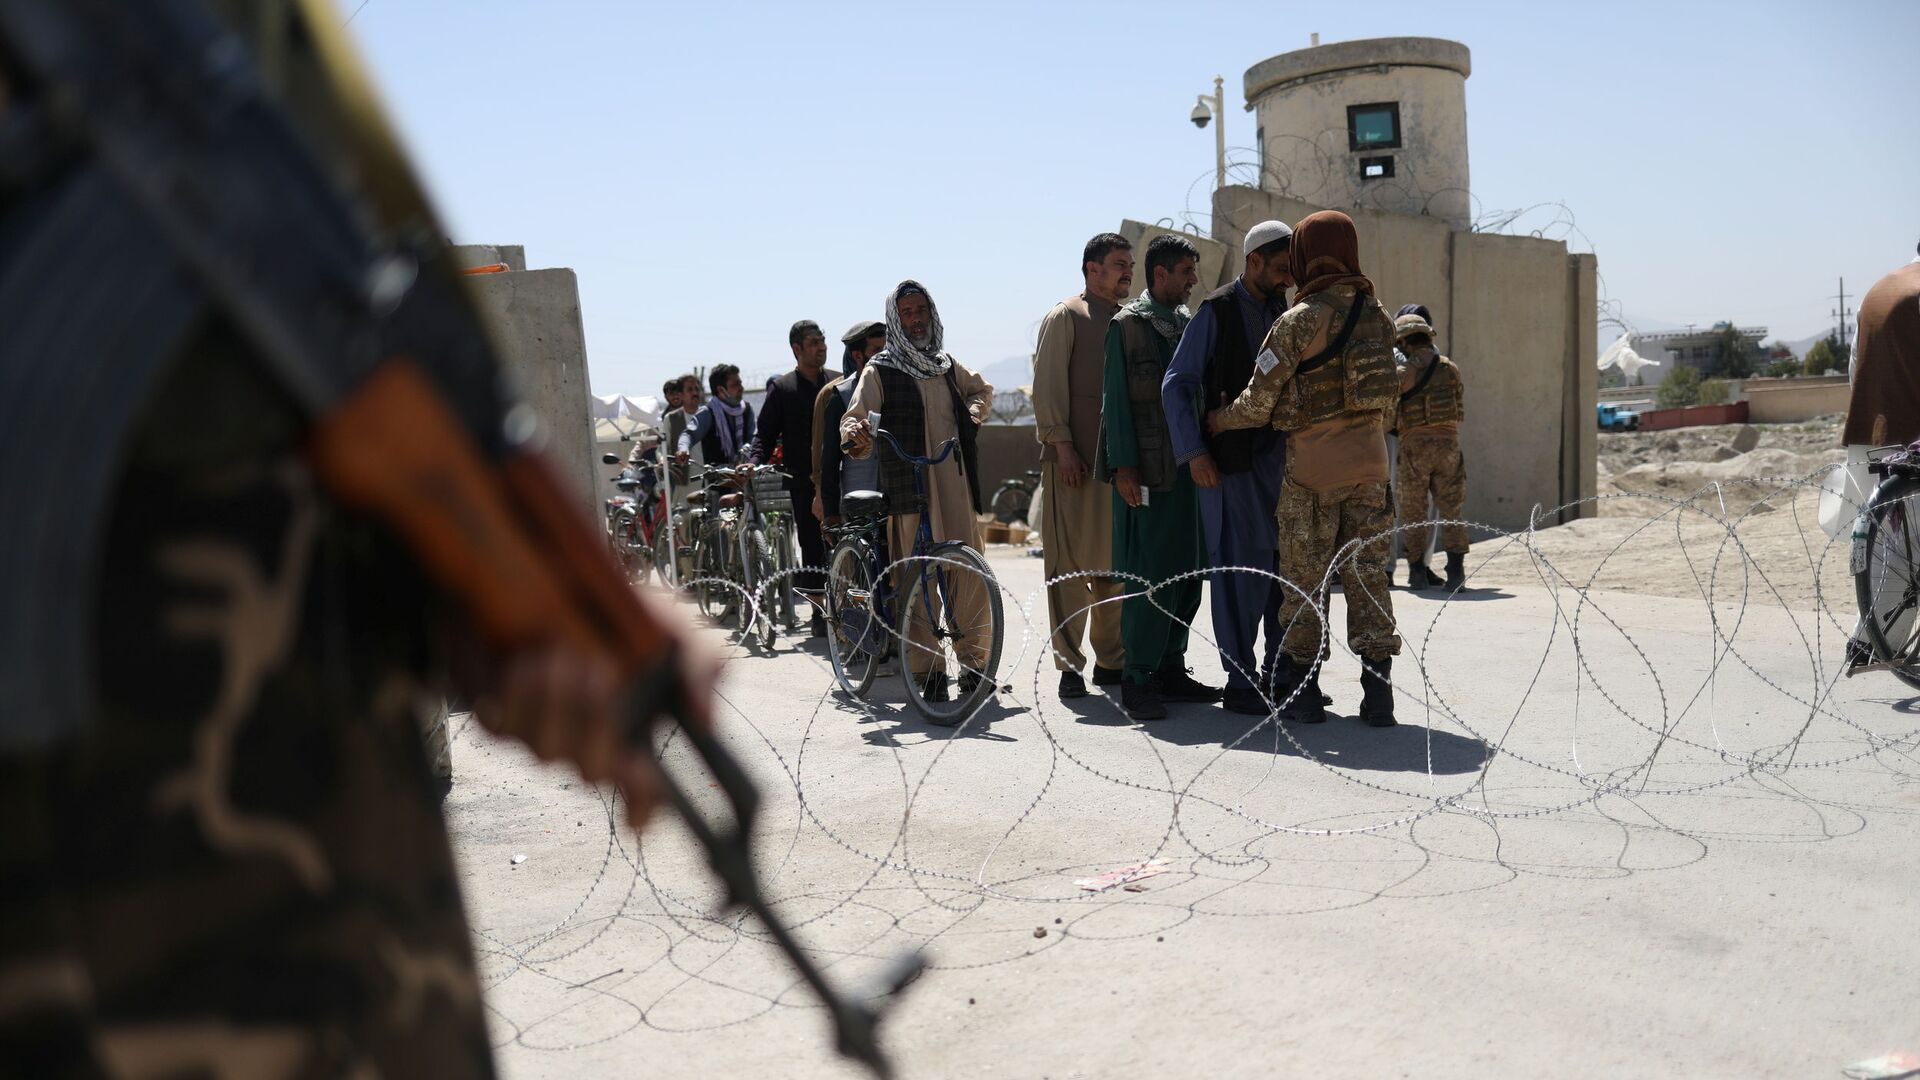 Taliban members pat down workers leaving the military airfield in Kabul, Afghanistan, September 5, 2021 - Sputnik International, 1920, 14.09.2021